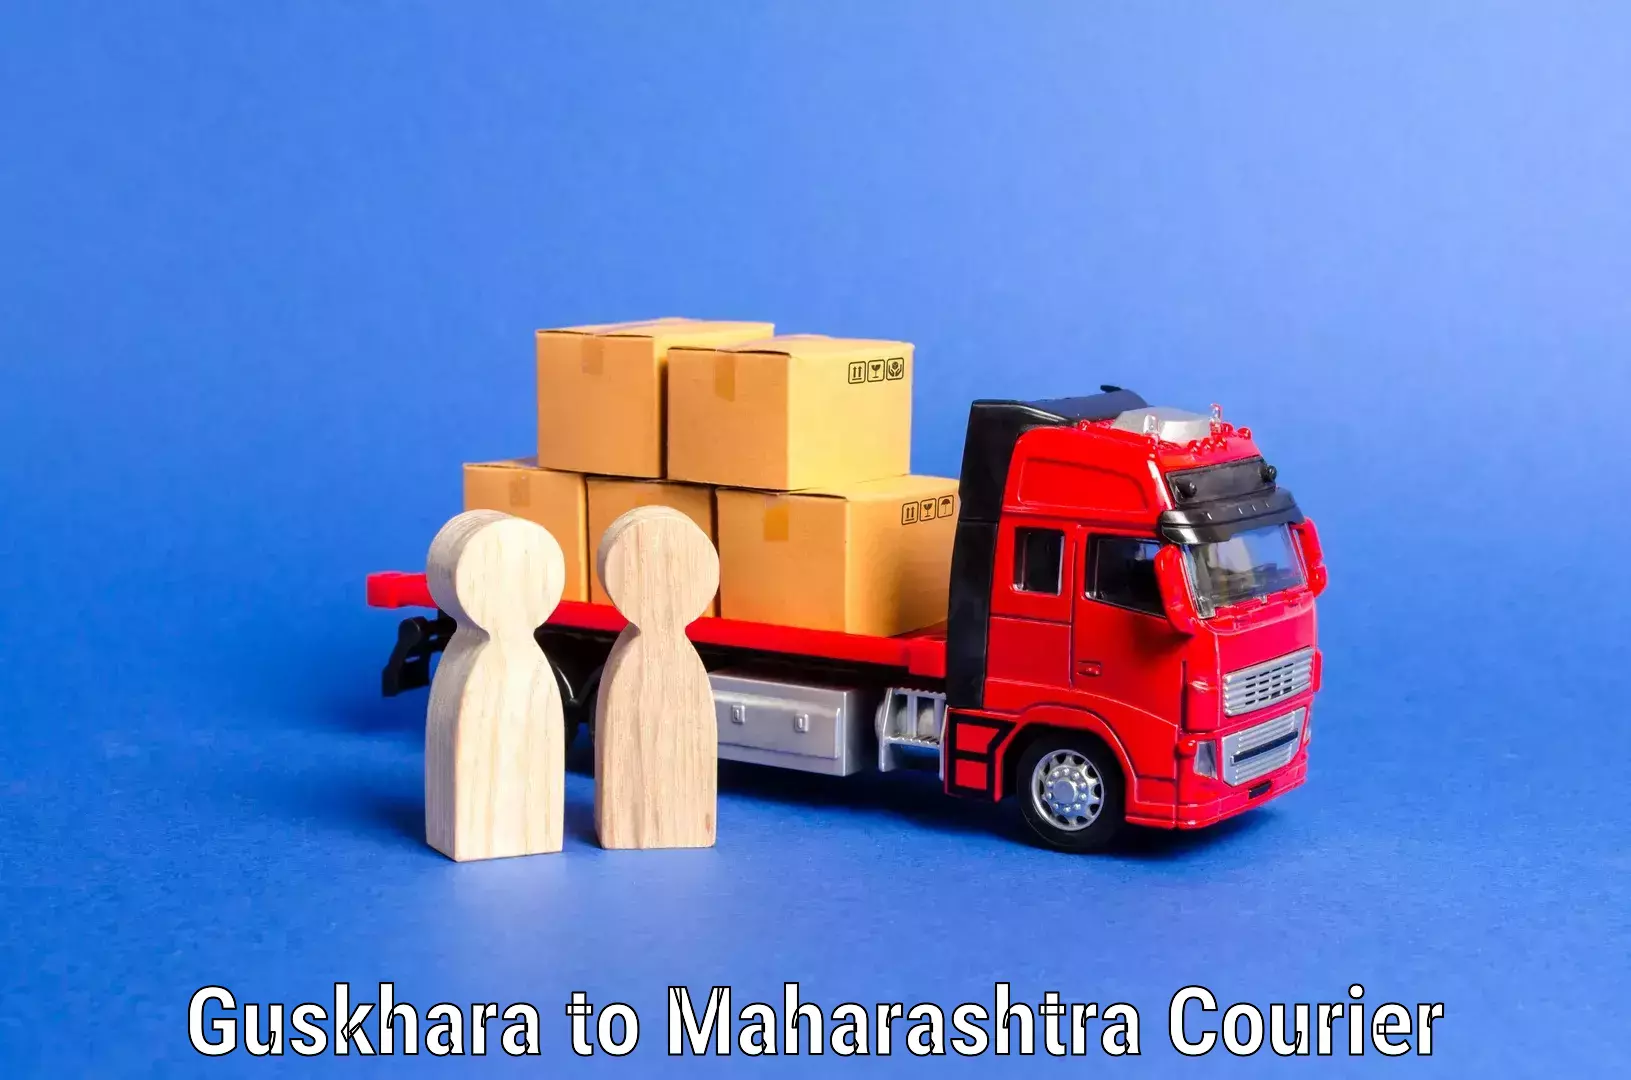 Quality relocation services Guskhara to Maharashtra